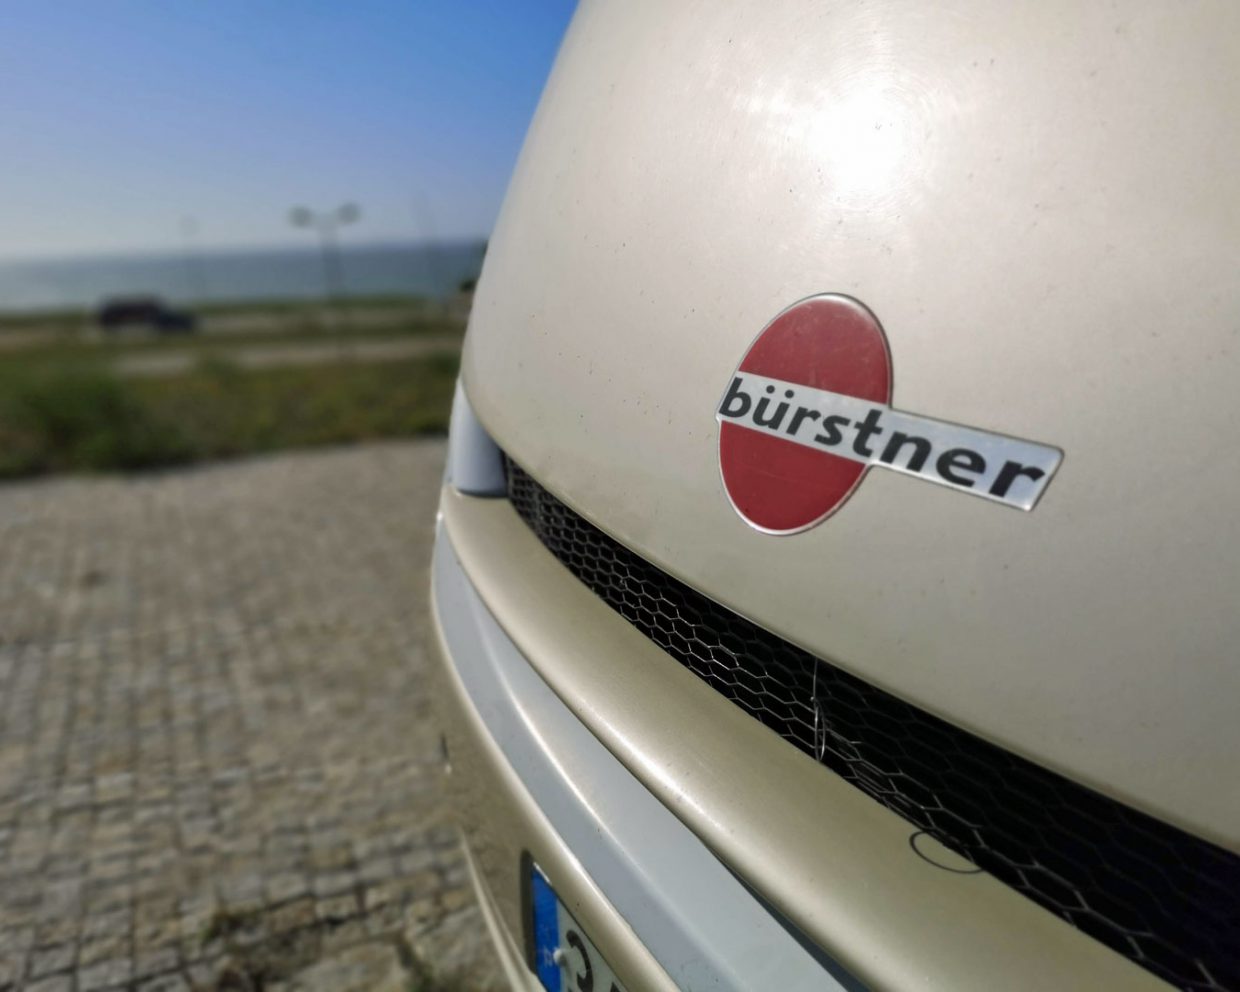 German brand Burstner